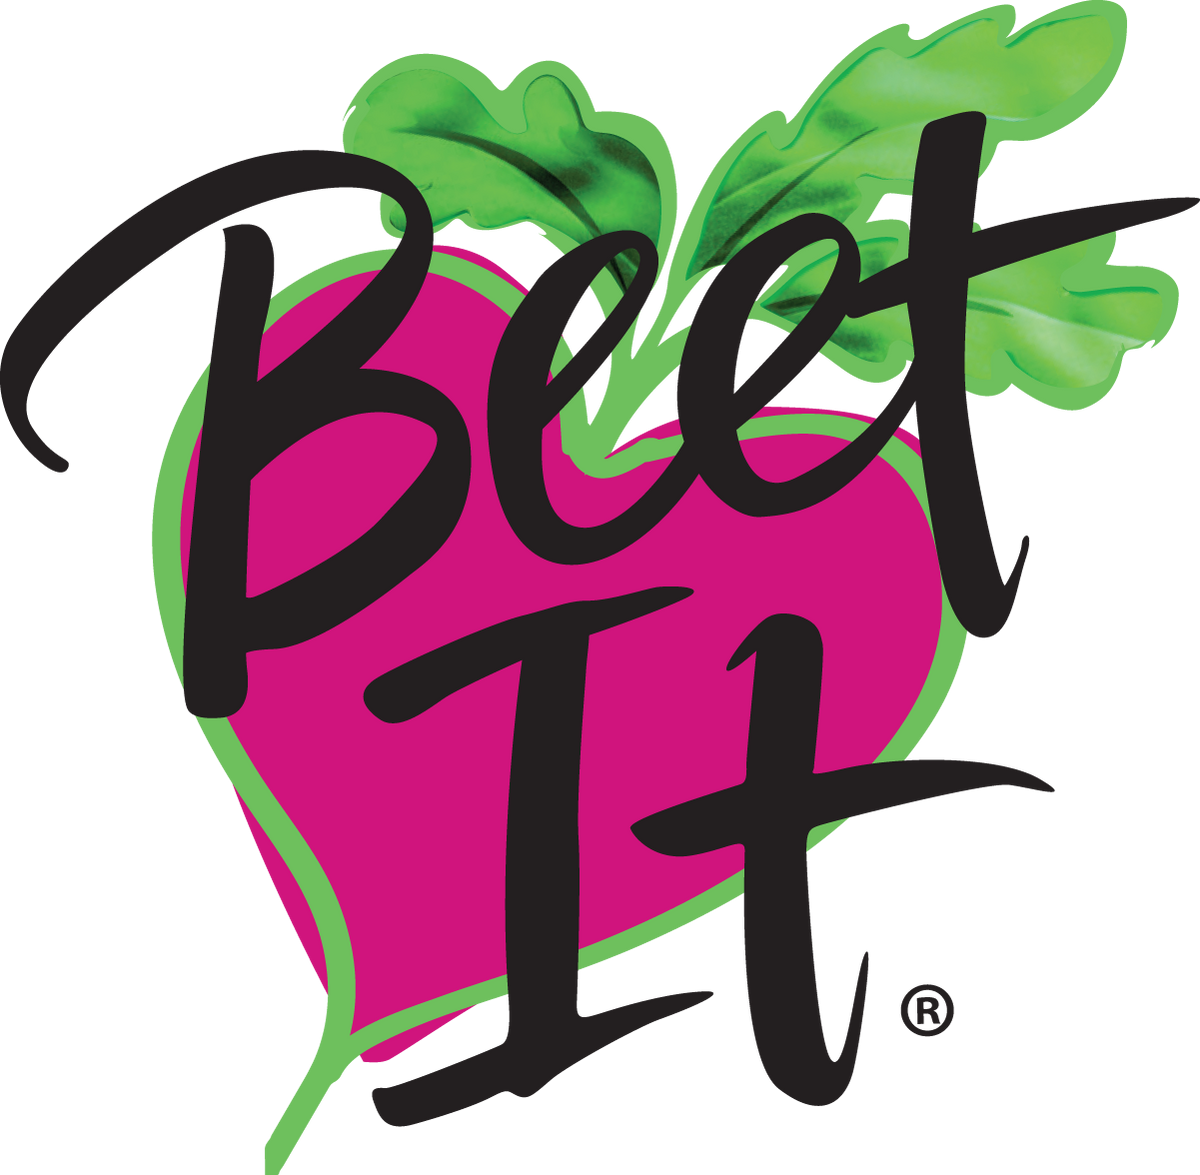 www.beet-it.us